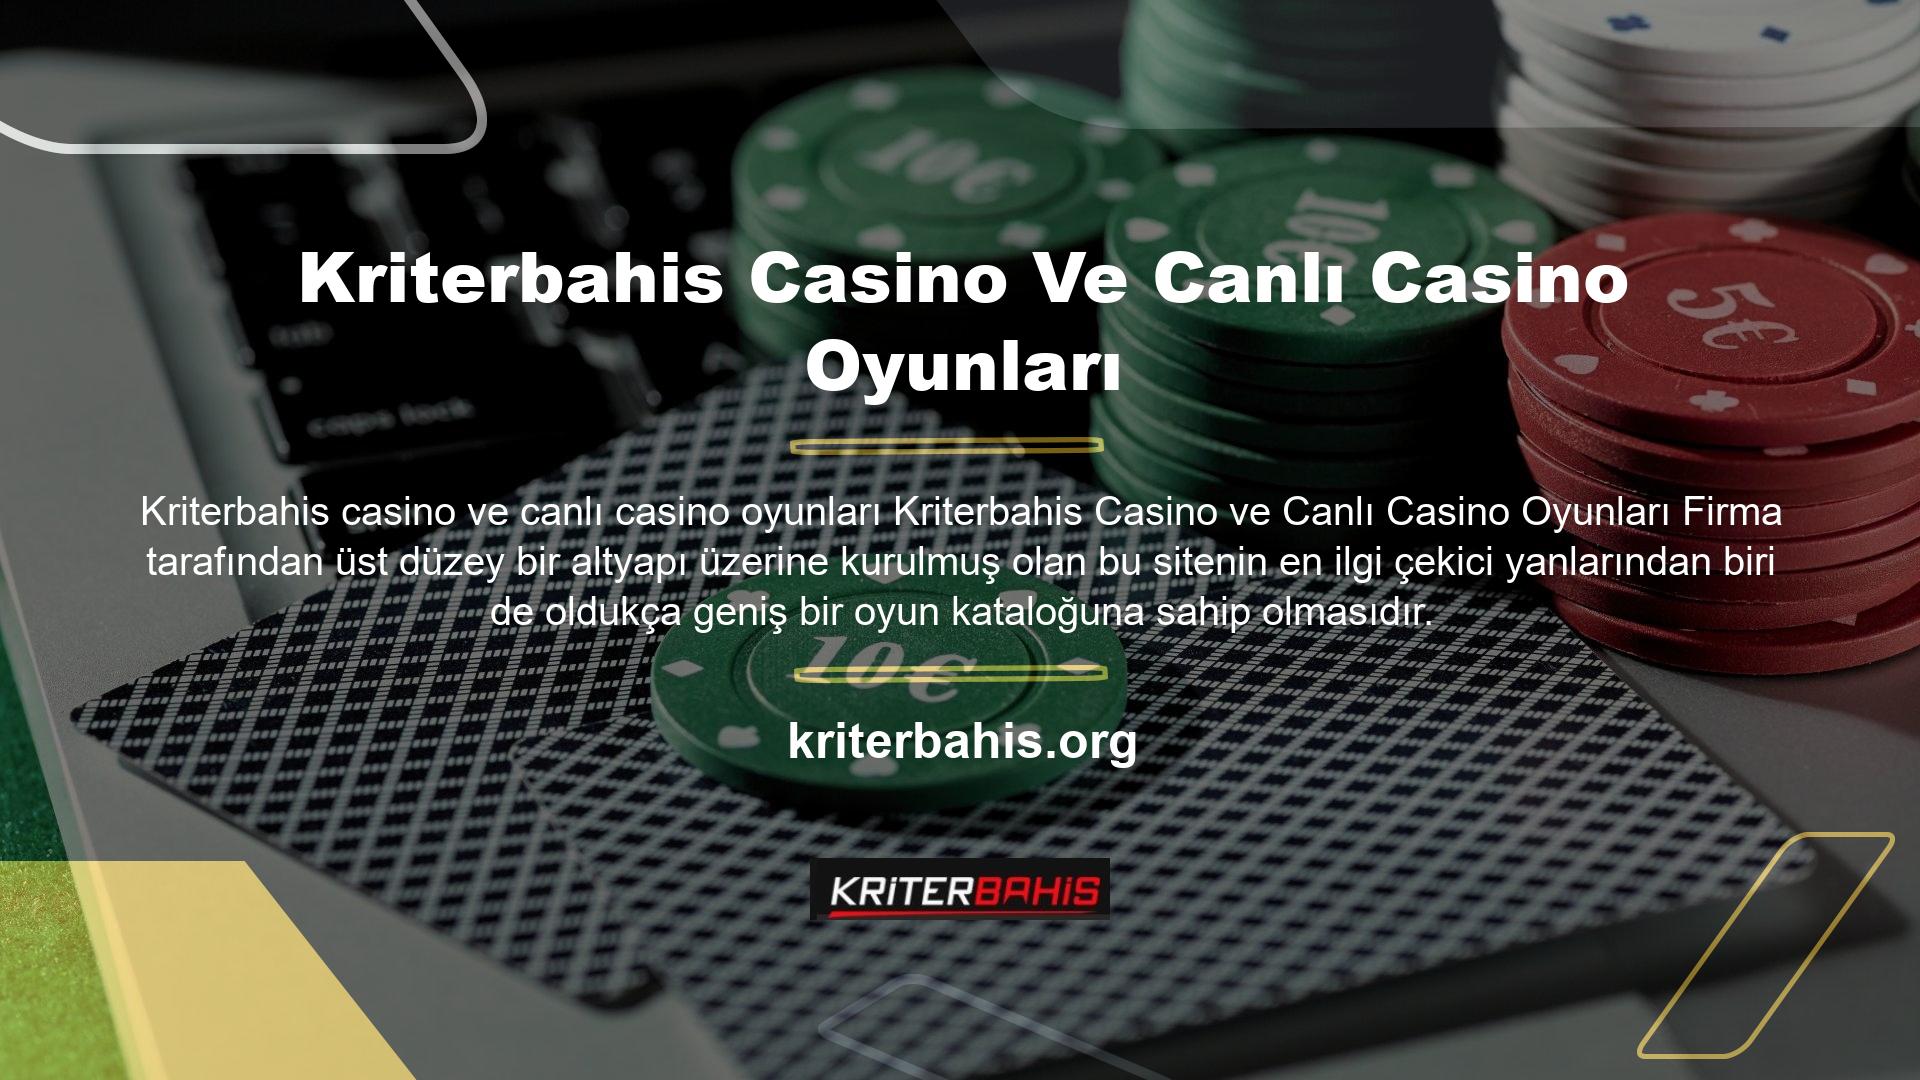 Kriterbahis bunu casino oyunları alanında da sunmaktadır ve oldukça geniş bir oyun portföyüne sahiptir